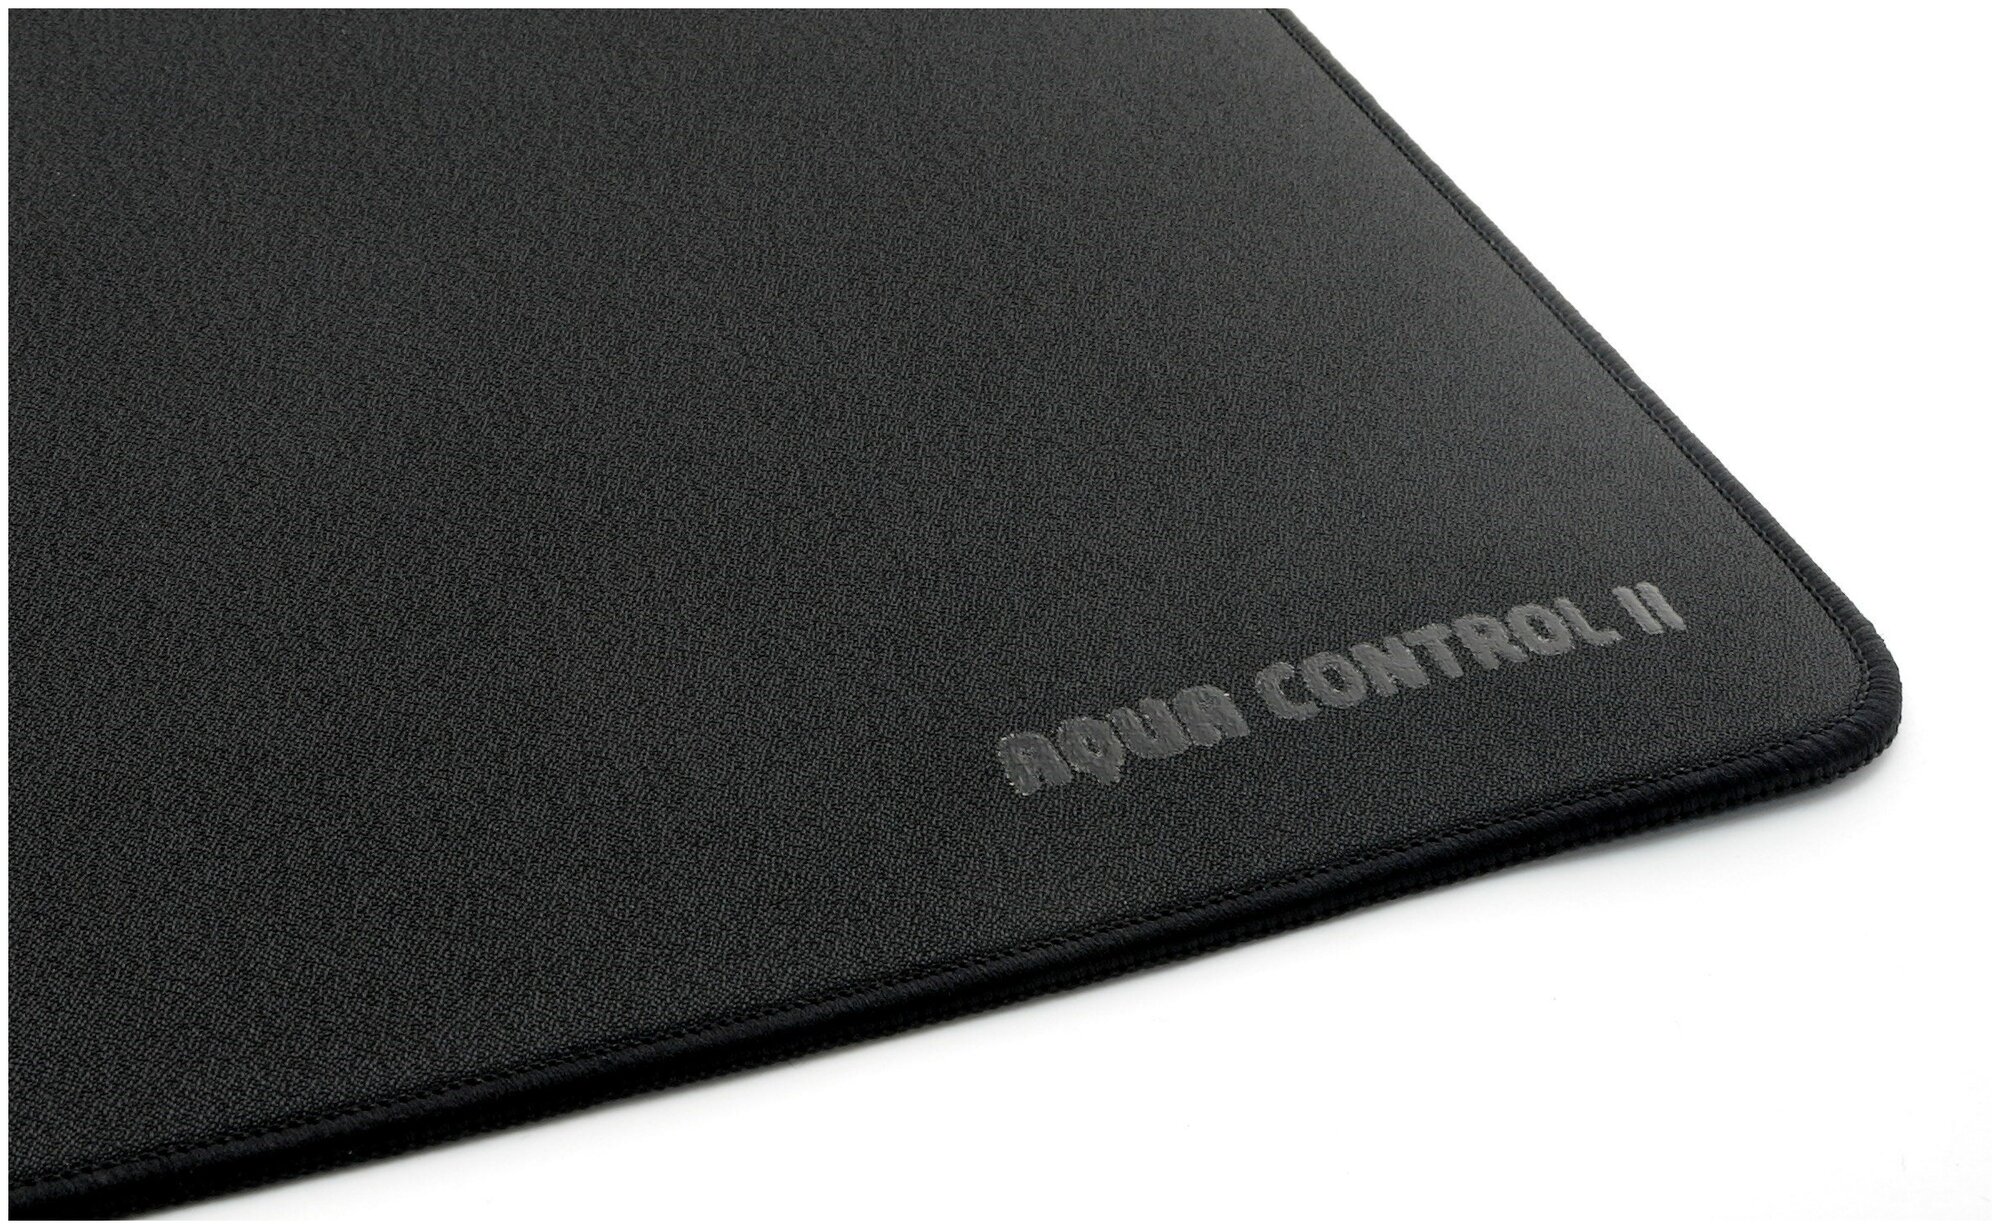 Коврик для мыши X-raypad Aqua Control II Black 3XL Extended (1200x550x4мм)